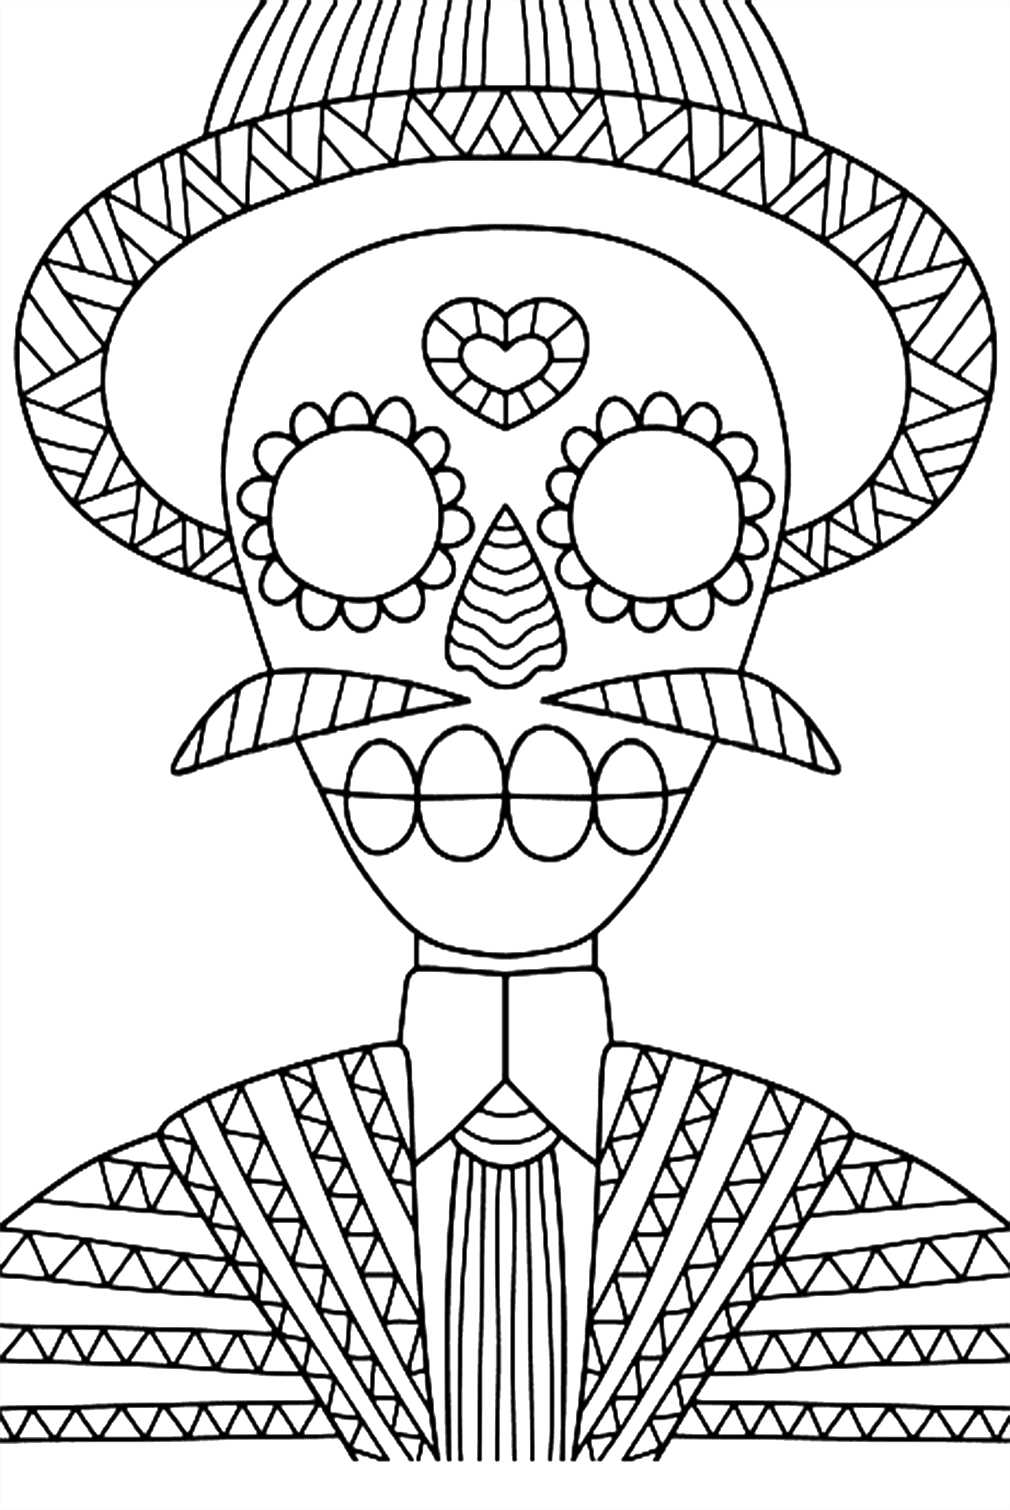 Esqueleto de traje con sombrero y bigote del Día de Muertos